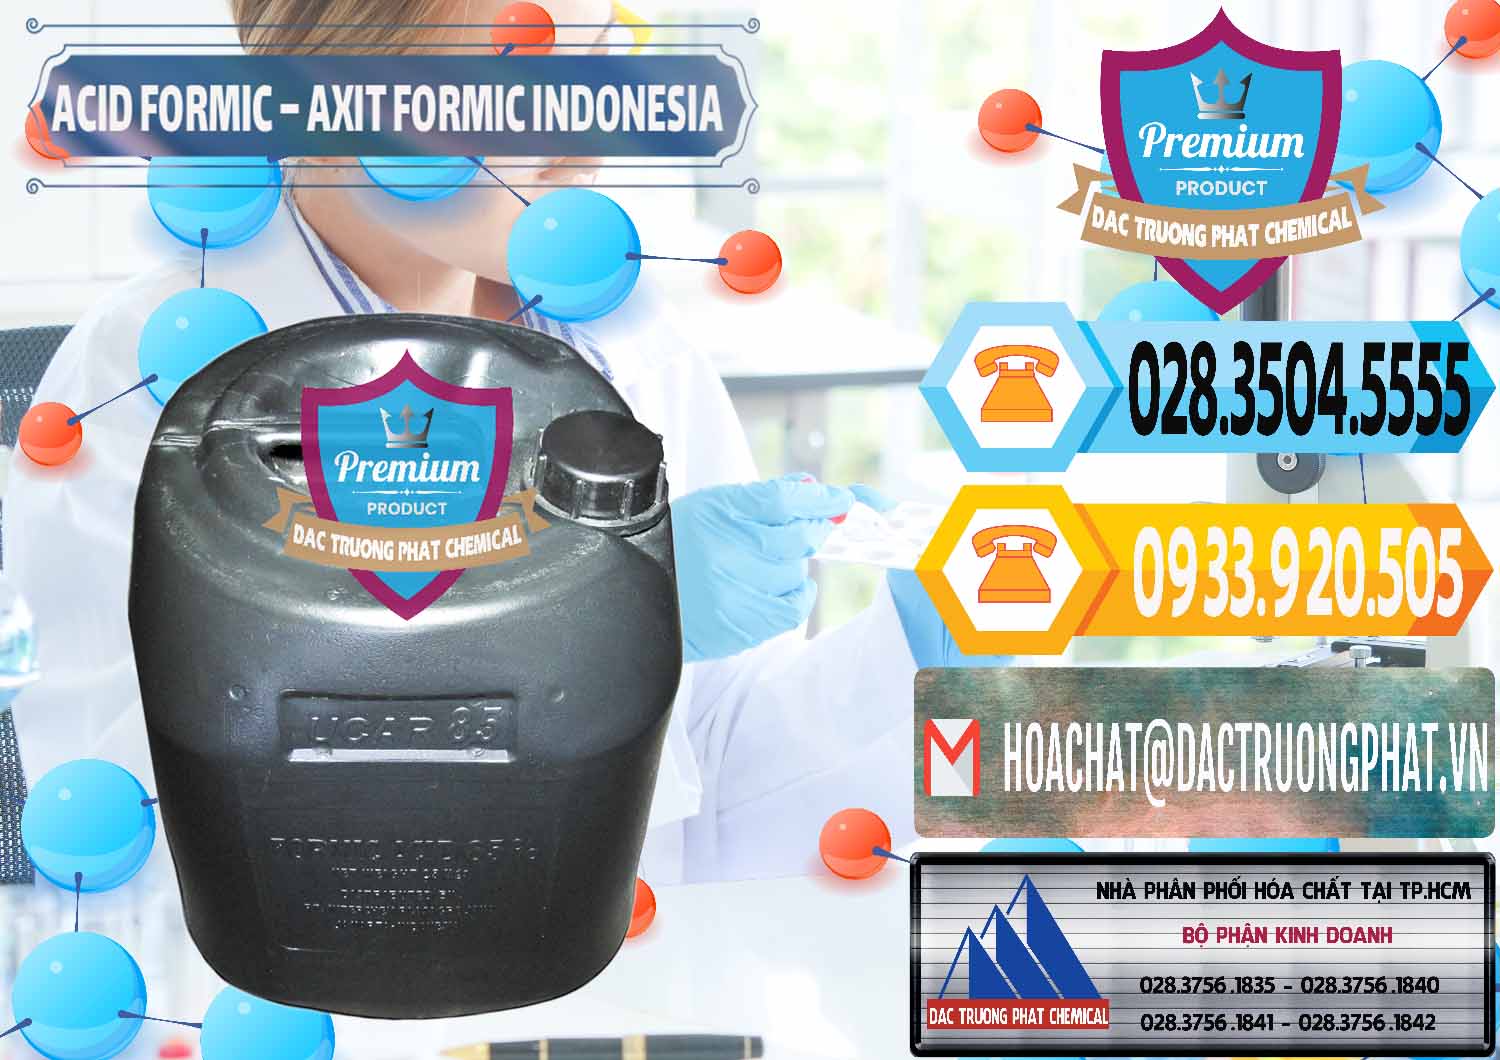 Công ty chuyên cung ứng ( bán ) Acid Formic - Axit Formic Indonesia - 0026 - Chuyên cung ứng & phân phối hóa chất tại TP.HCM - hoachattayrua.net